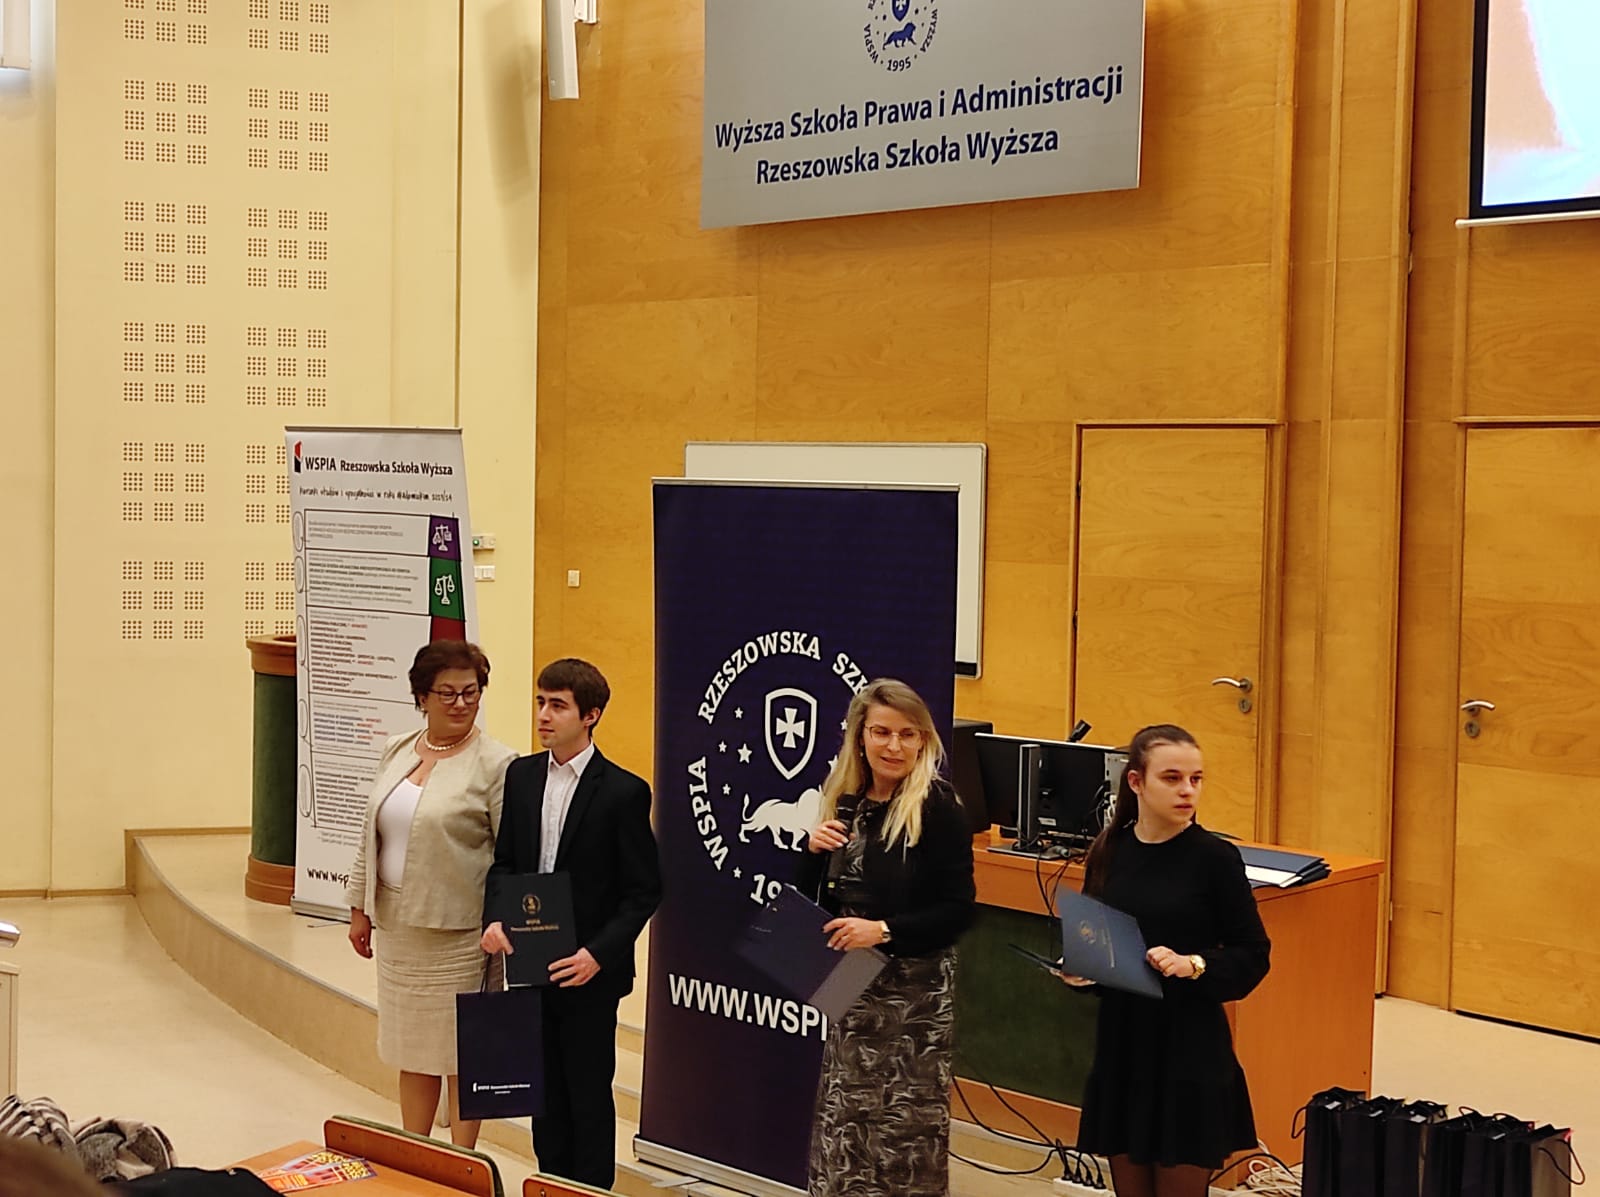 Uczniowie LO Kołaczyce zostali laureatami XVI Edycji Konkursu Wiedzy o Prawach Człowieka 